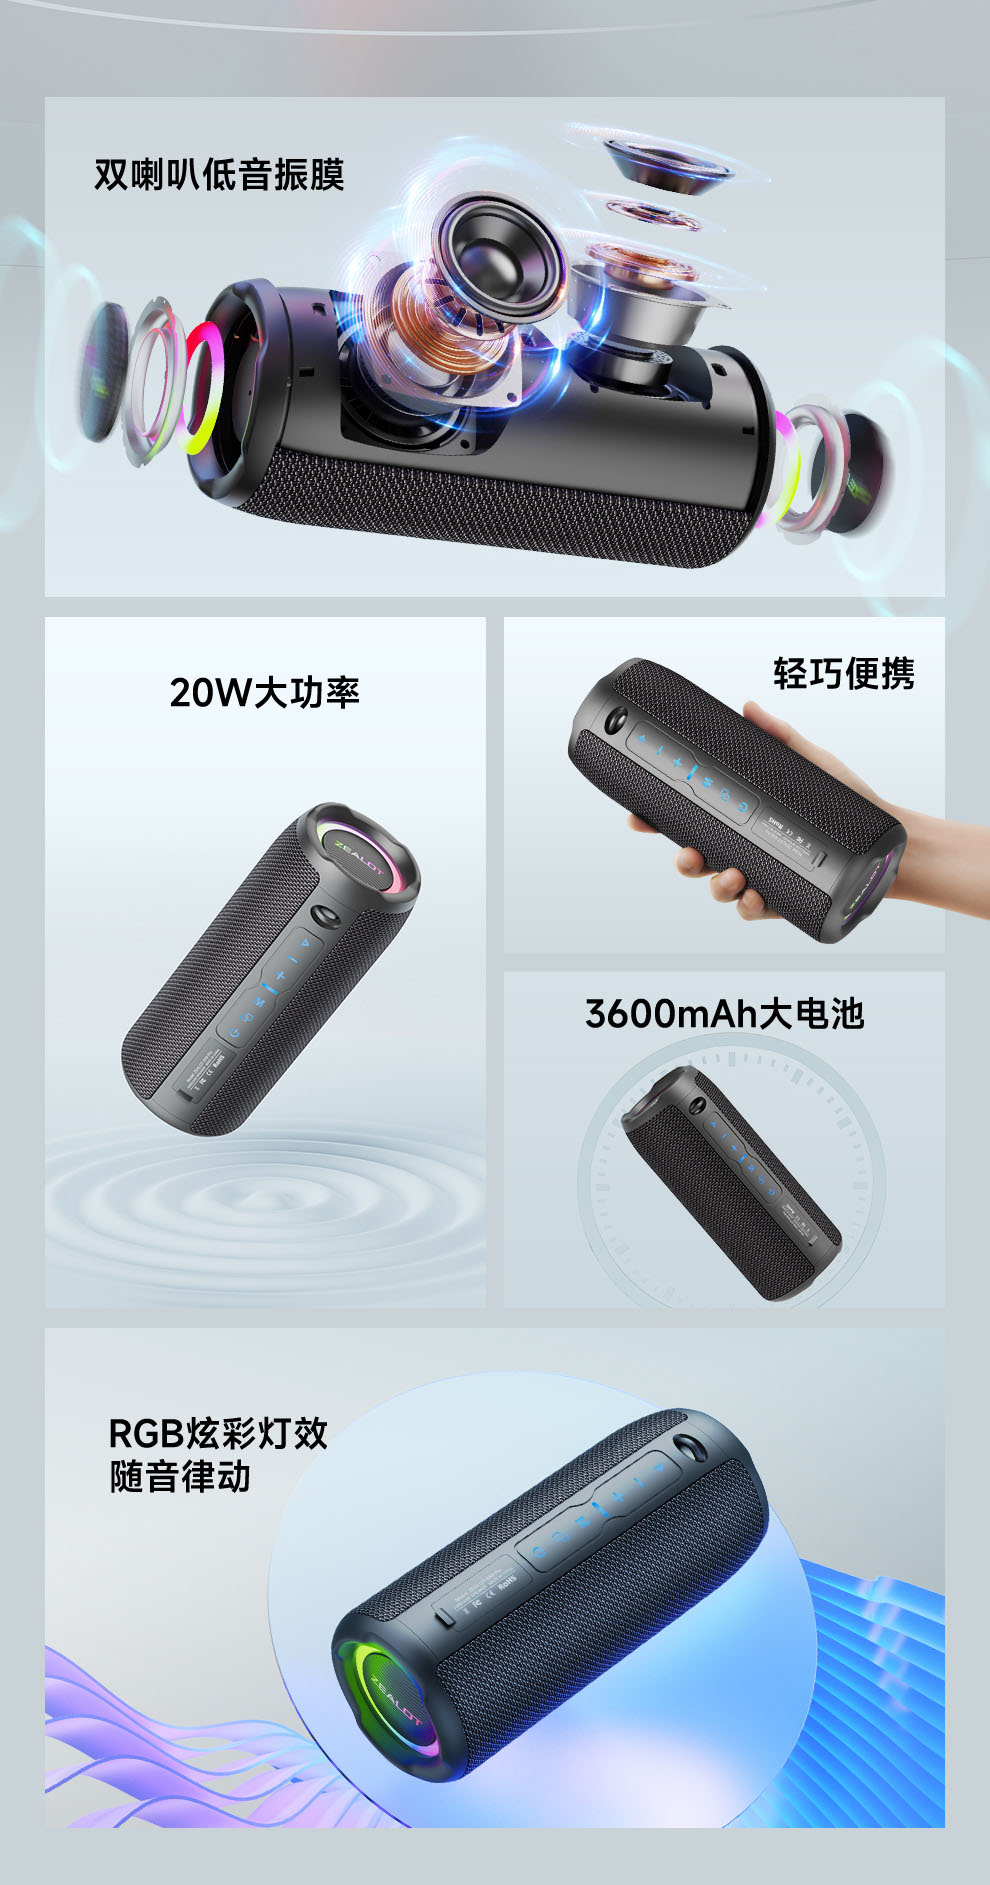 狂热者S49 Pro 蓝牙音箱-深圳市狂热者数码科技有限公司